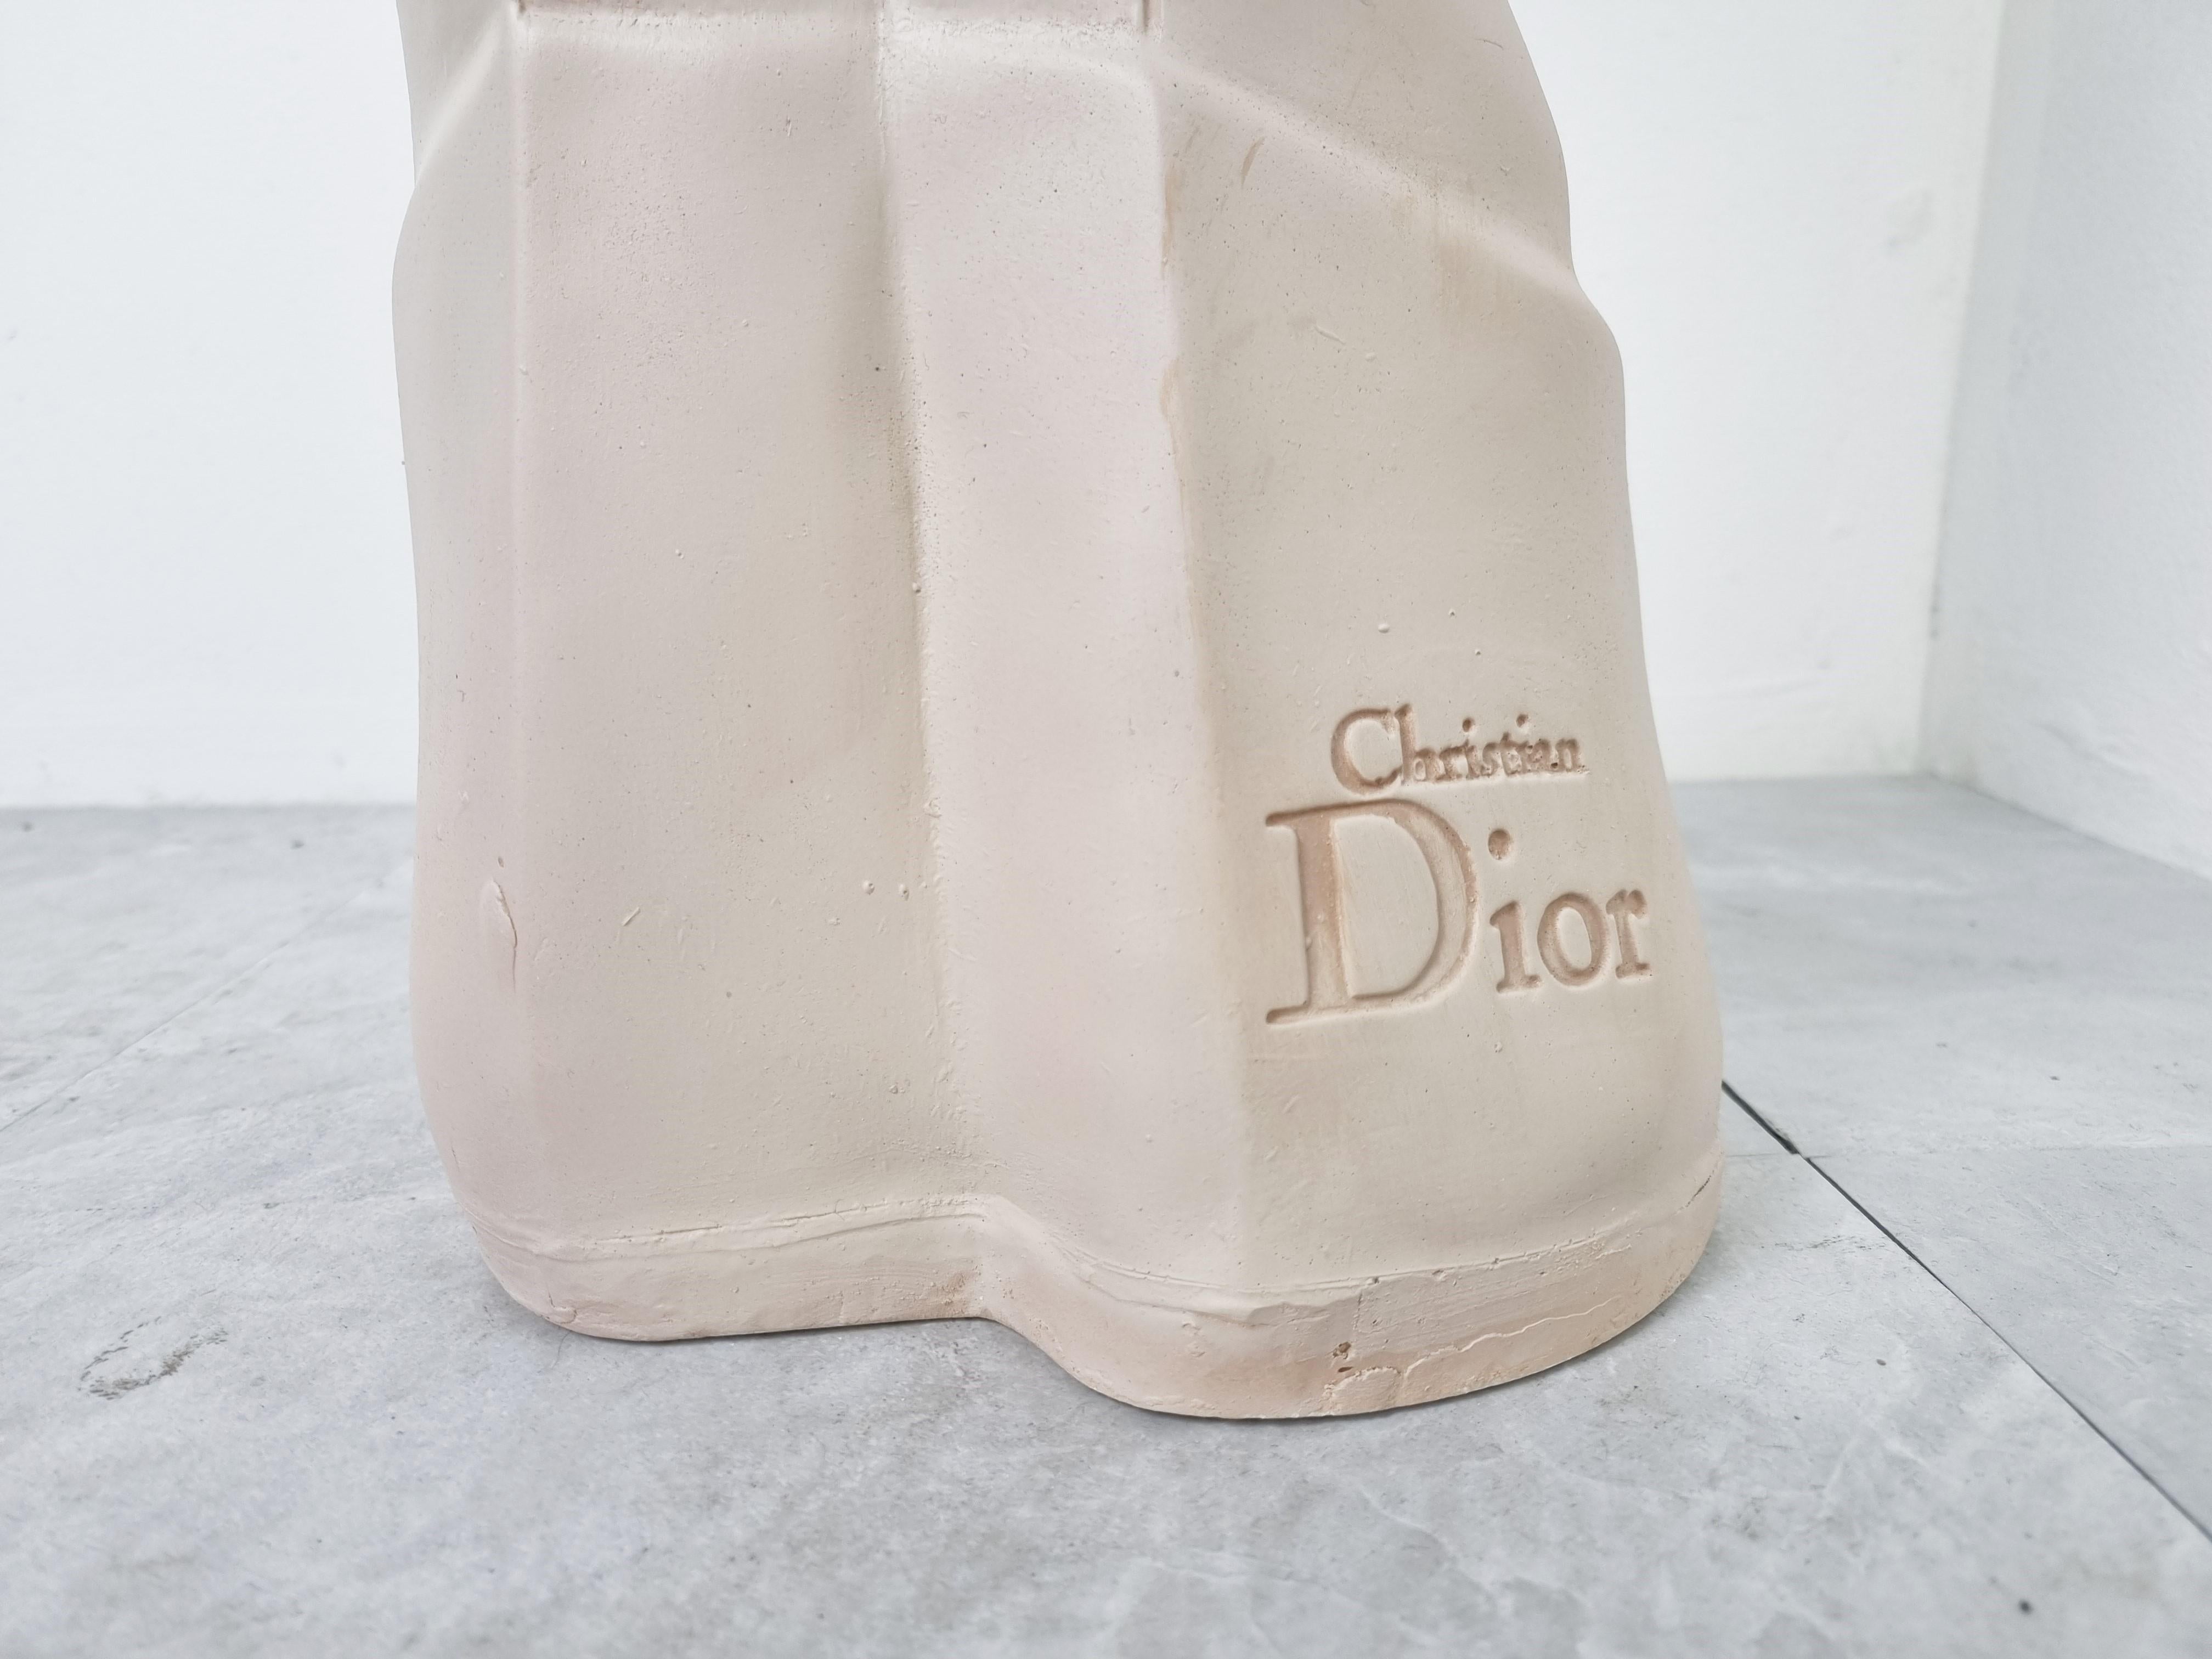 Magnifique et fascinante statue publicitaire pour Christian Dior.

Il aurait été utilisé sur un comptoir de magasin ou pour attirer l'attention dans une vitrine.

Il présente quelques traces mineures d'utilisation.

Vient d'un lot acquis